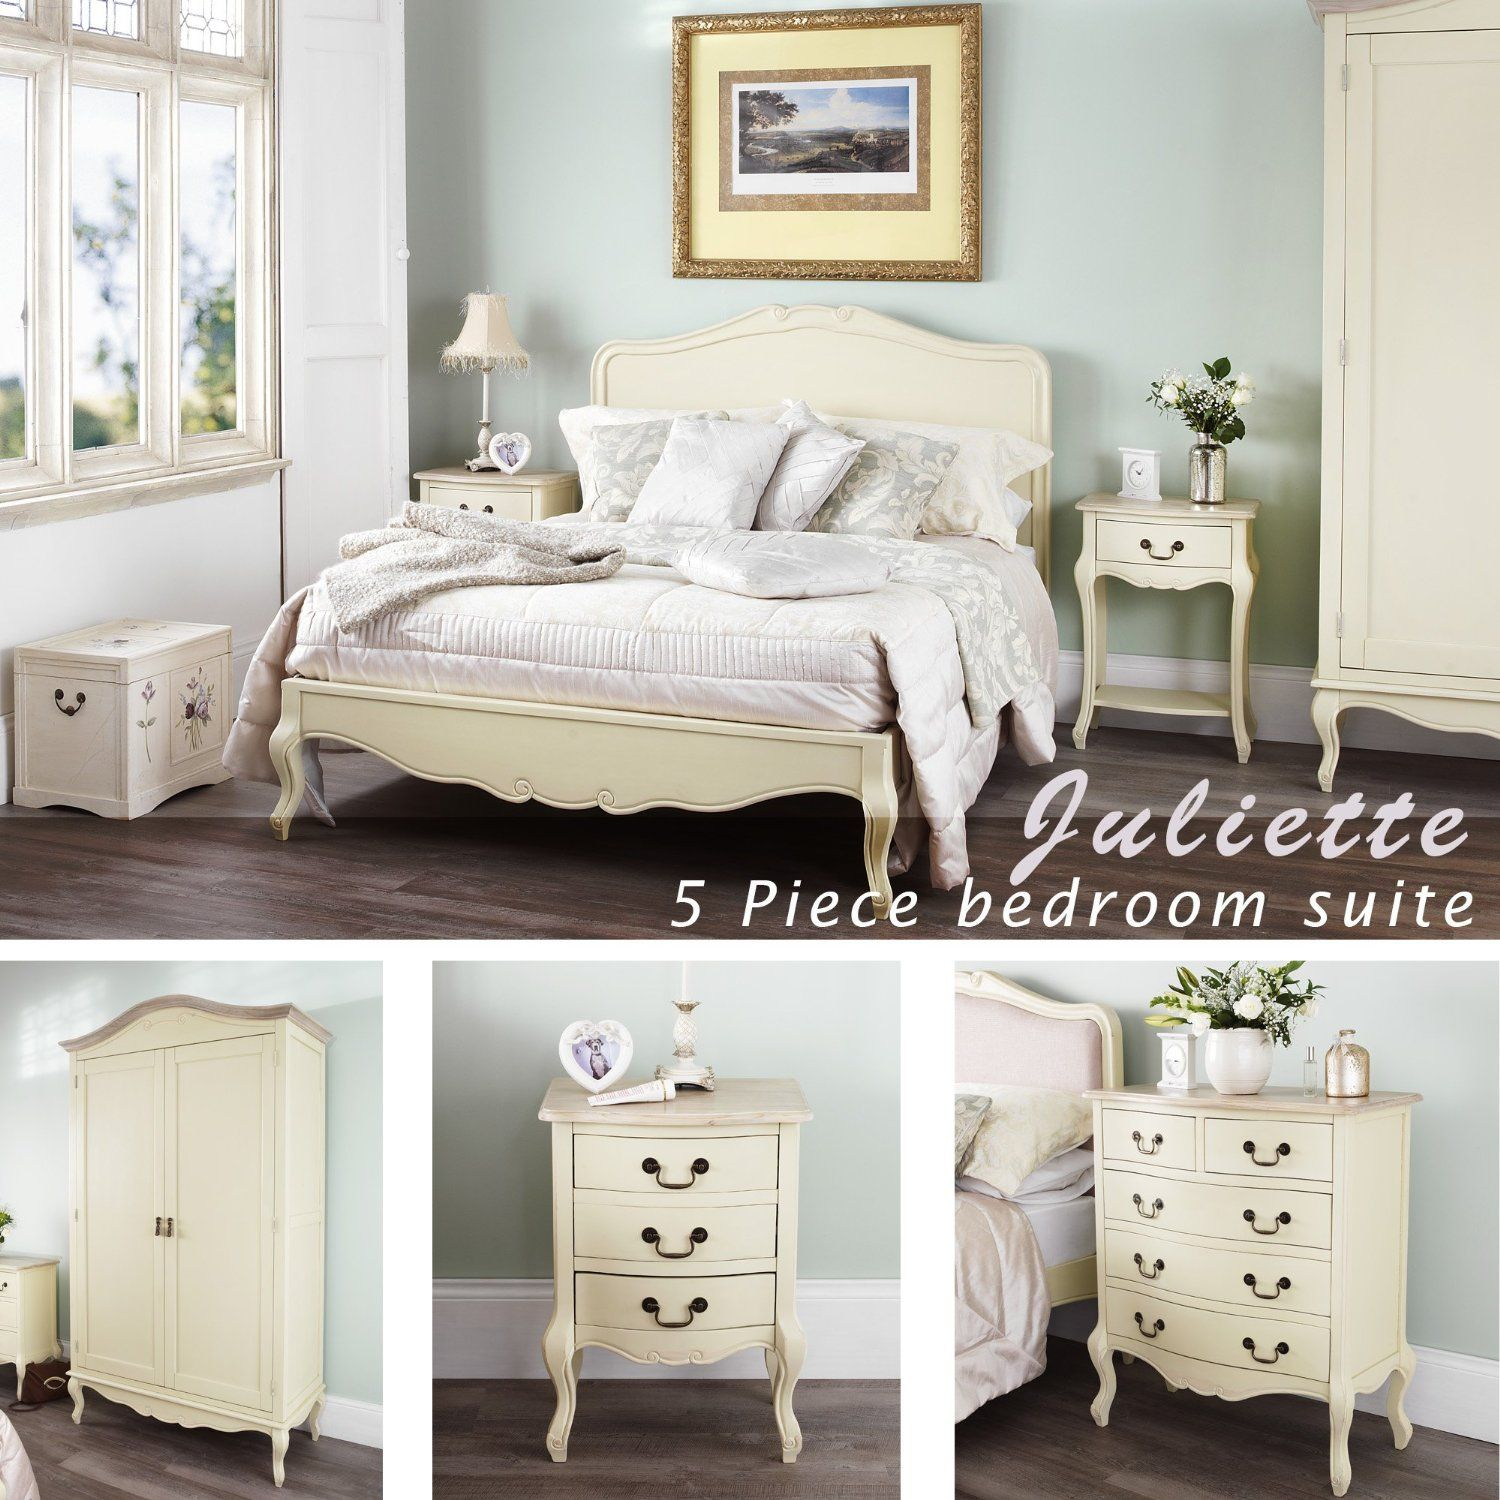 Gorgeous Juliette Shab Chic Champagne 5pc Bedroom Furniture Set regarding measurements 1500 X 1500